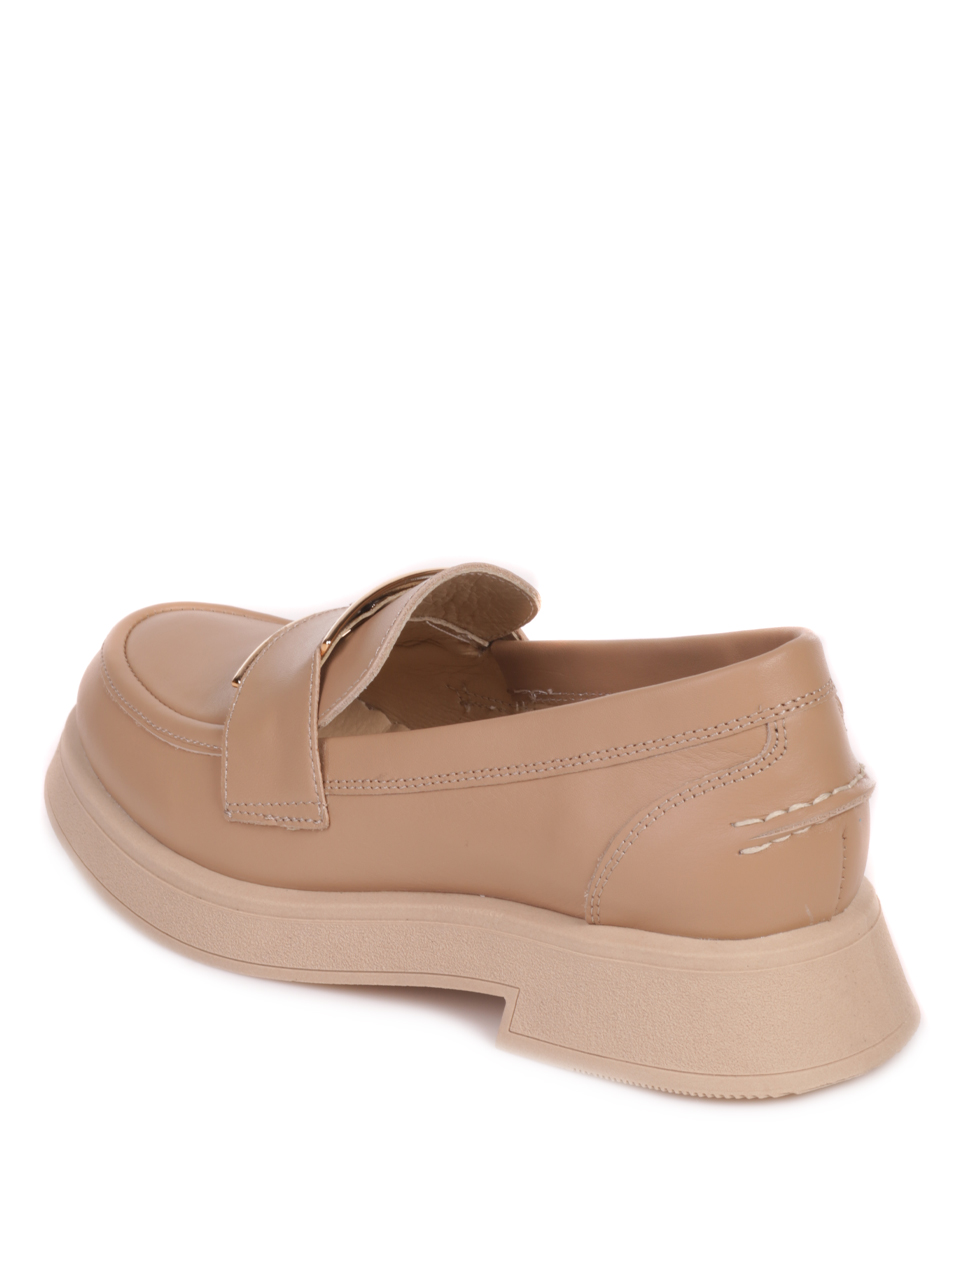 Дамски обувки от естествена кожа в бежово 3AT-23762 beige